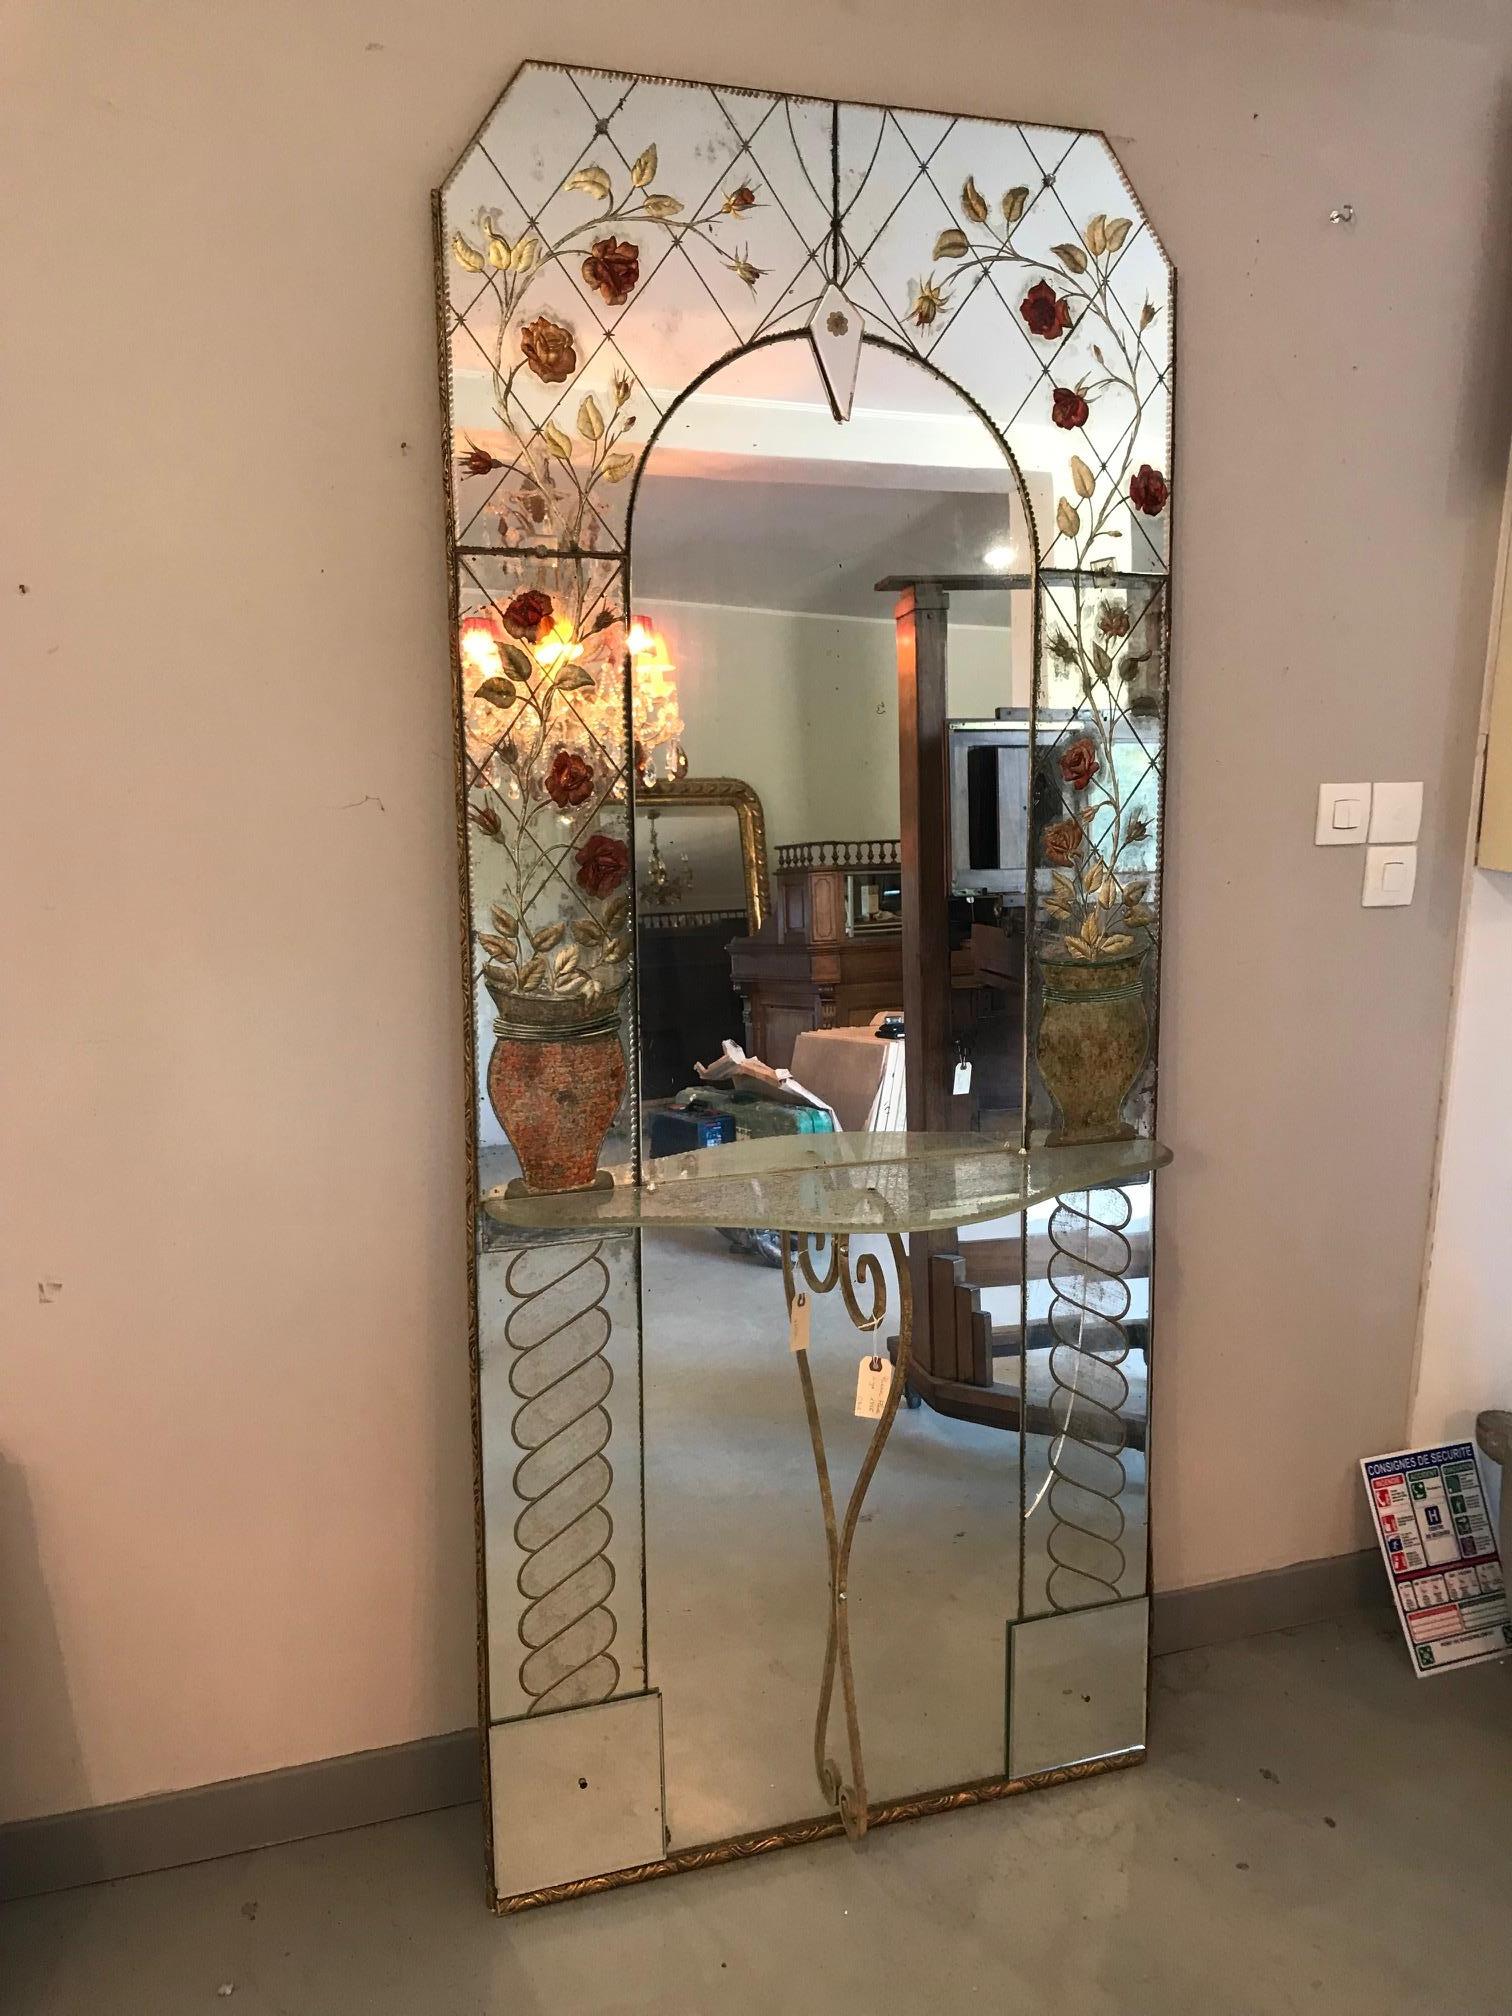 Beau miroir de sol vénitien du 20e siècle signé par Villeponge, datant des années 1956.
Roses décoration en verre. Étagère en verre avec base en fer blanc.
Verre miroir très délicat. Miroir rare. Signature manuscrite 